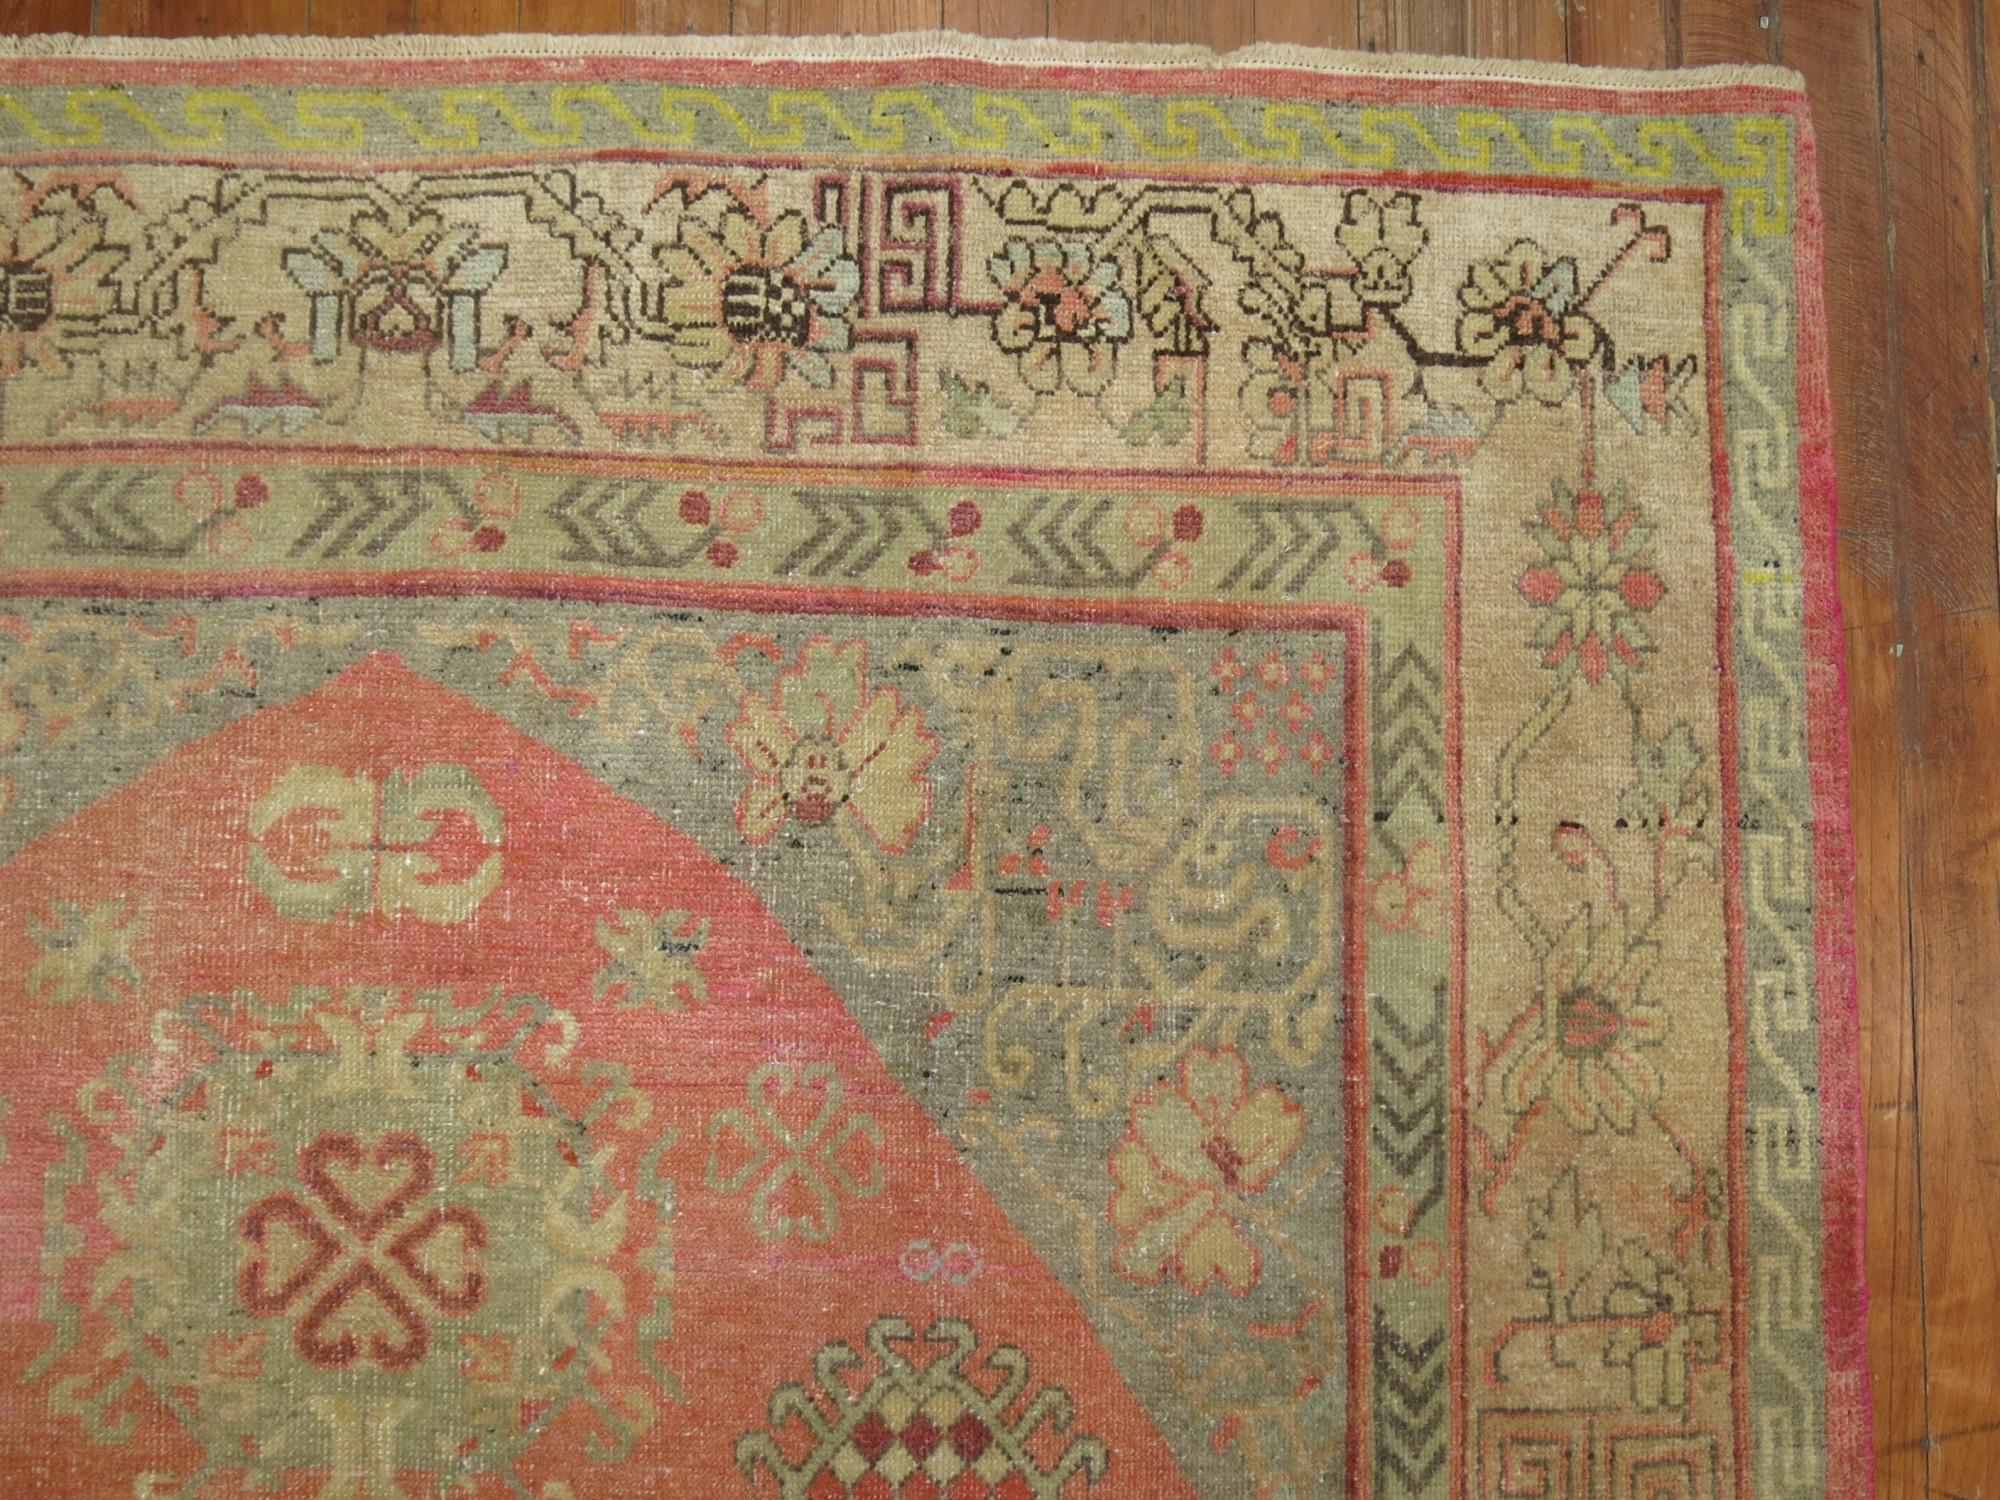 Einzigartiger Khotan-Teppich aus dem frühen 20. Jahrhundert mit einem zartrosa Feld, das aus einem Yin-Yang-Muster und einer Kamelbordüre besteht.

Maße: 5'4'' x 8'3''.